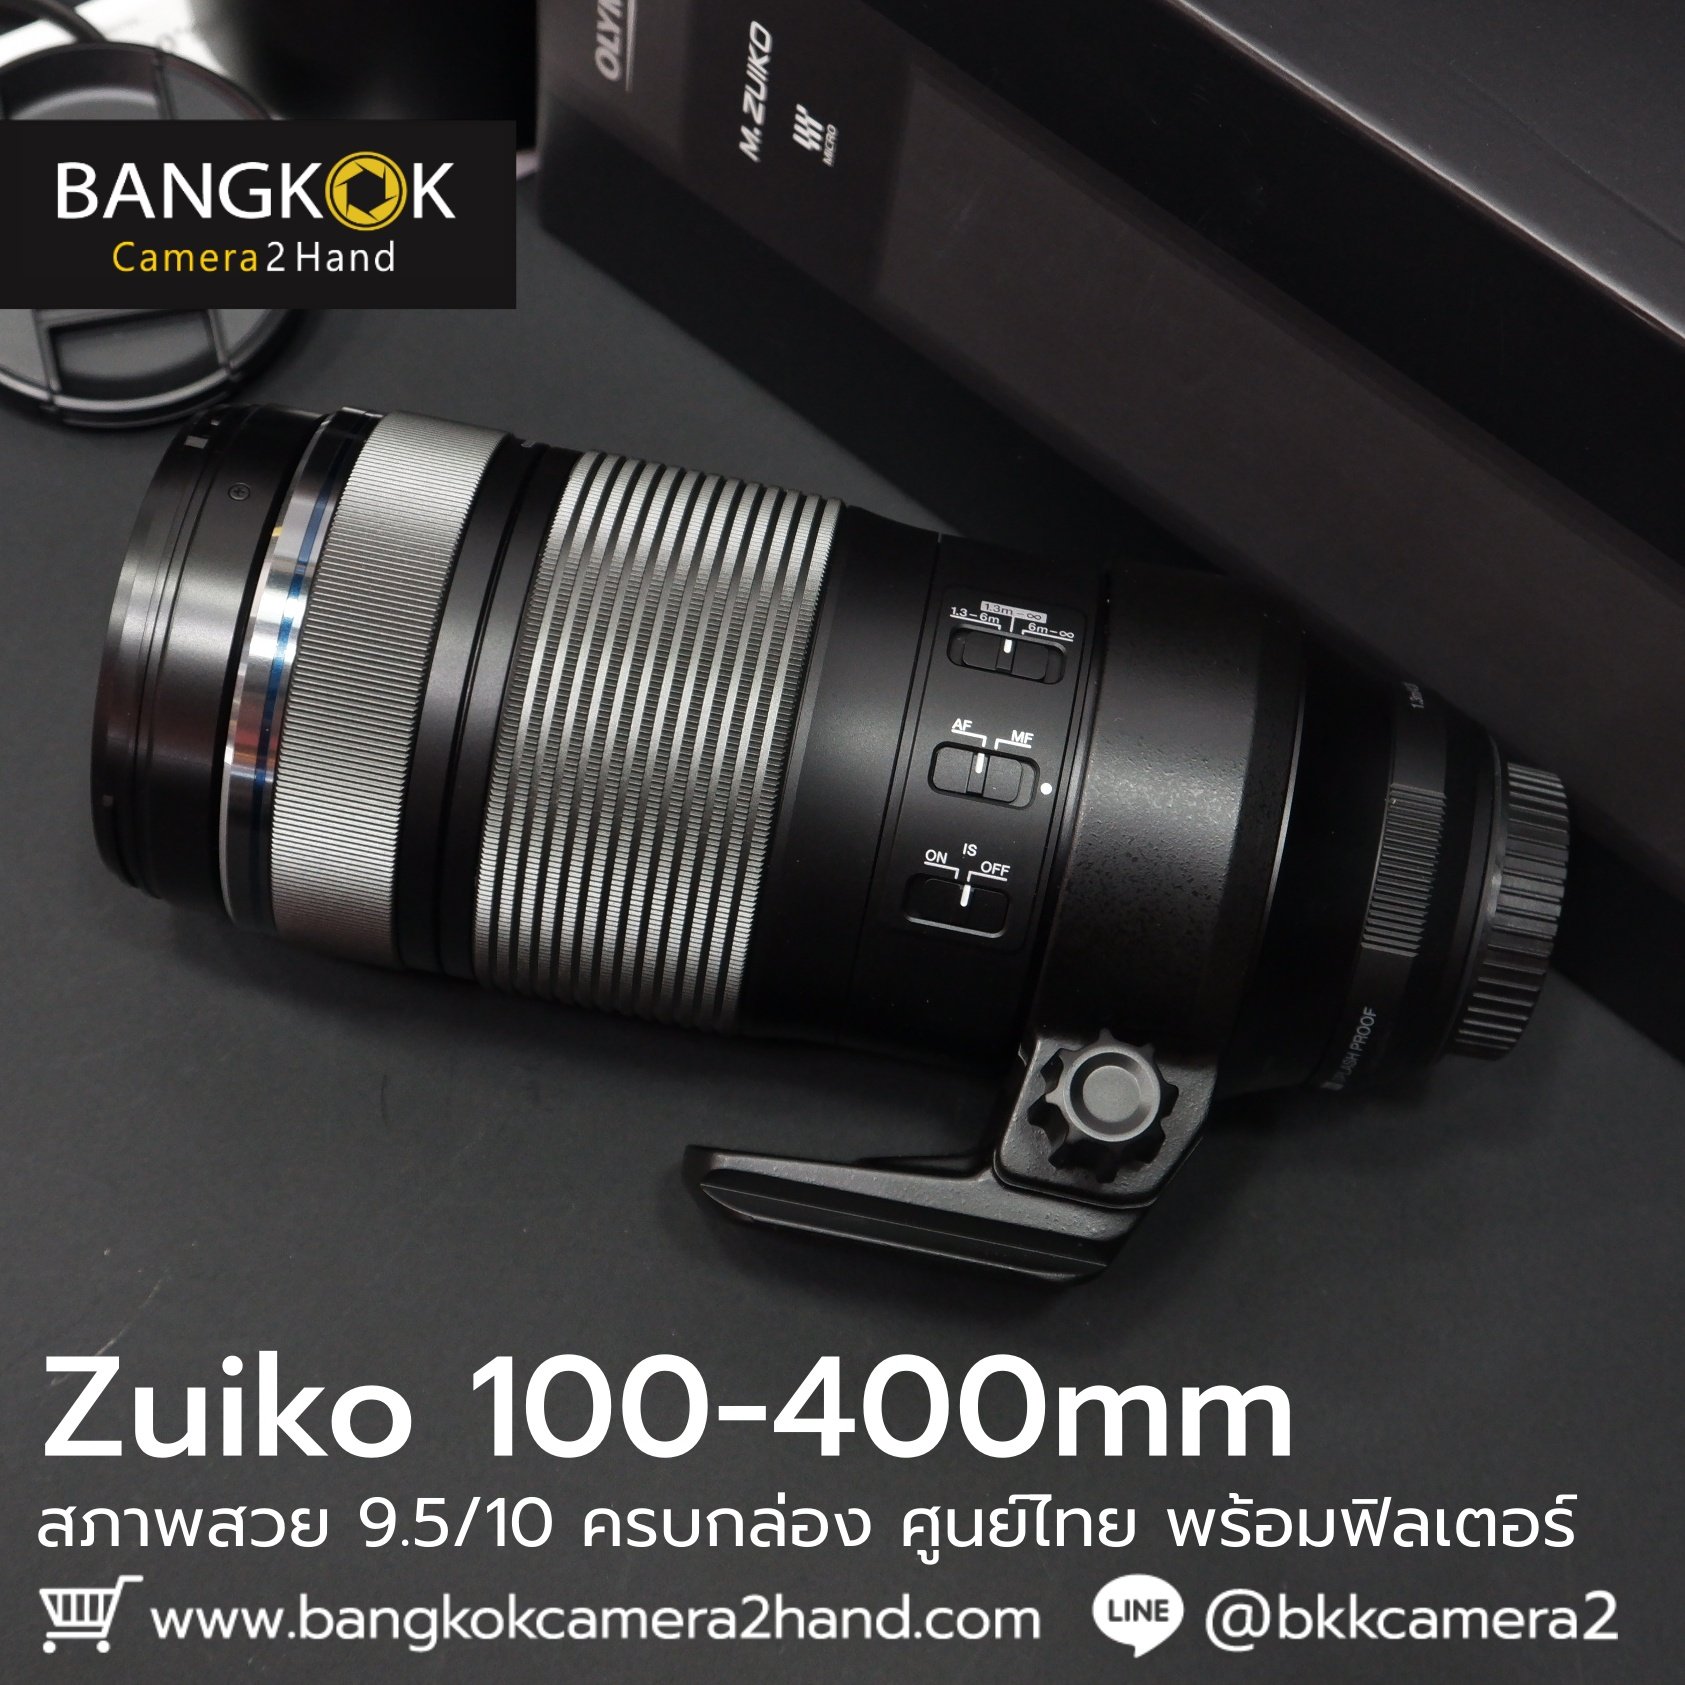 Zuiko 100-400mm ครบกล่อง ศูนย์ไทย